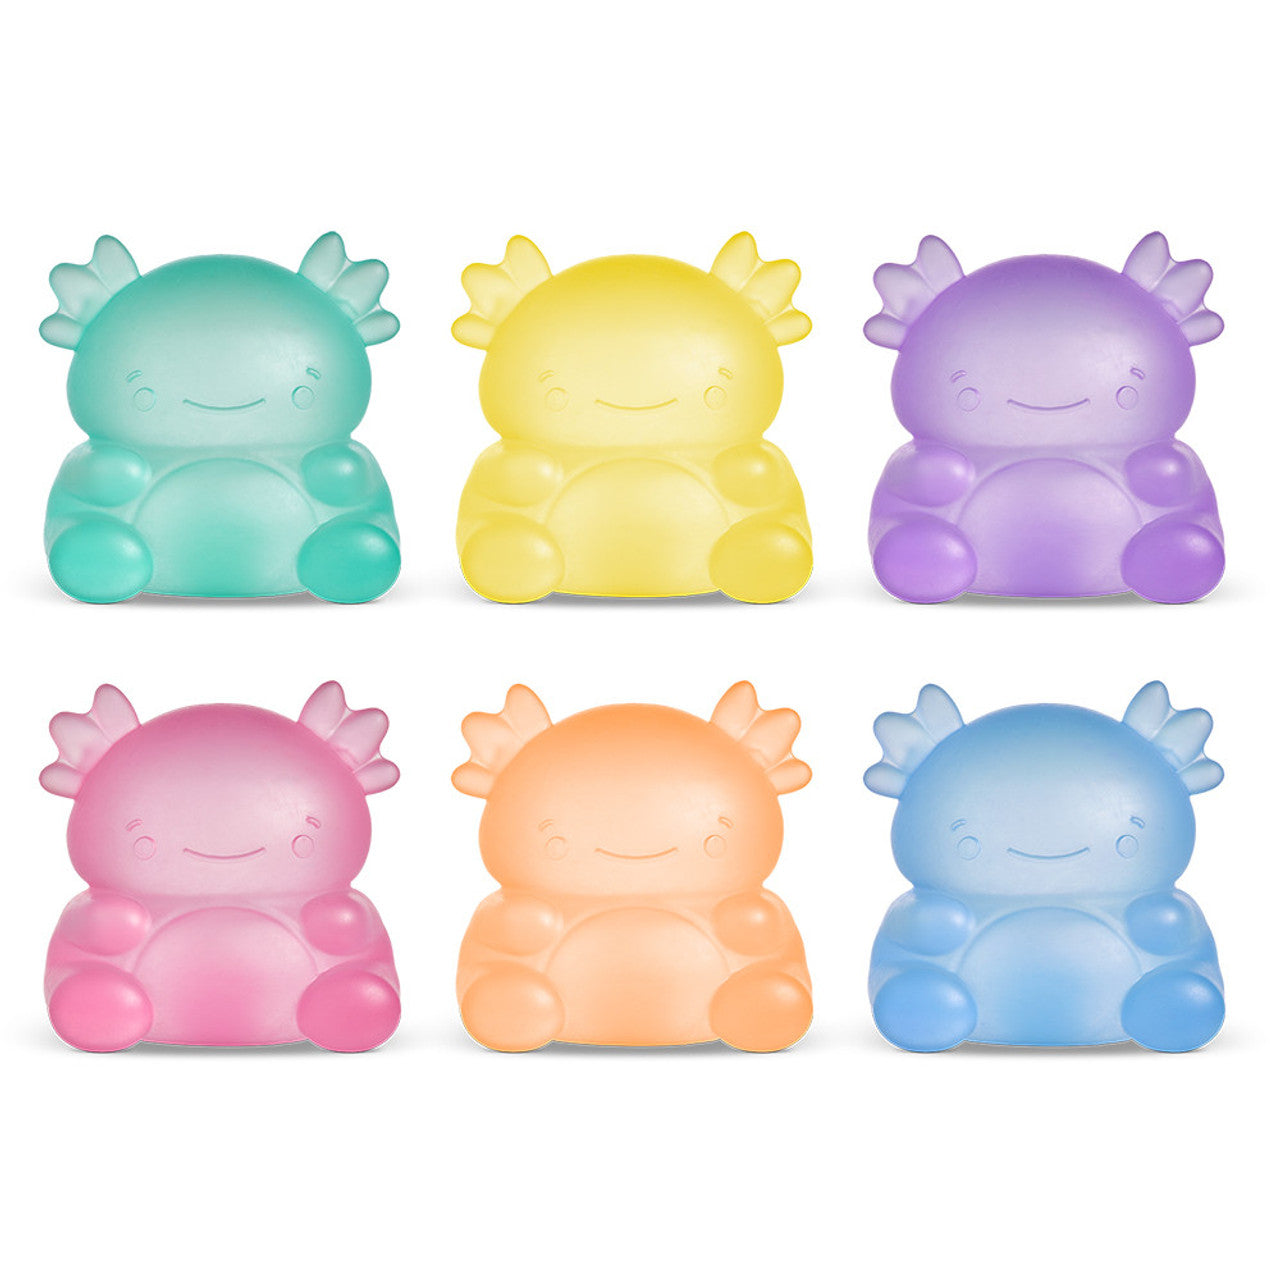 Super Duper Sugar Squisher Toy - Axolotl (random color)